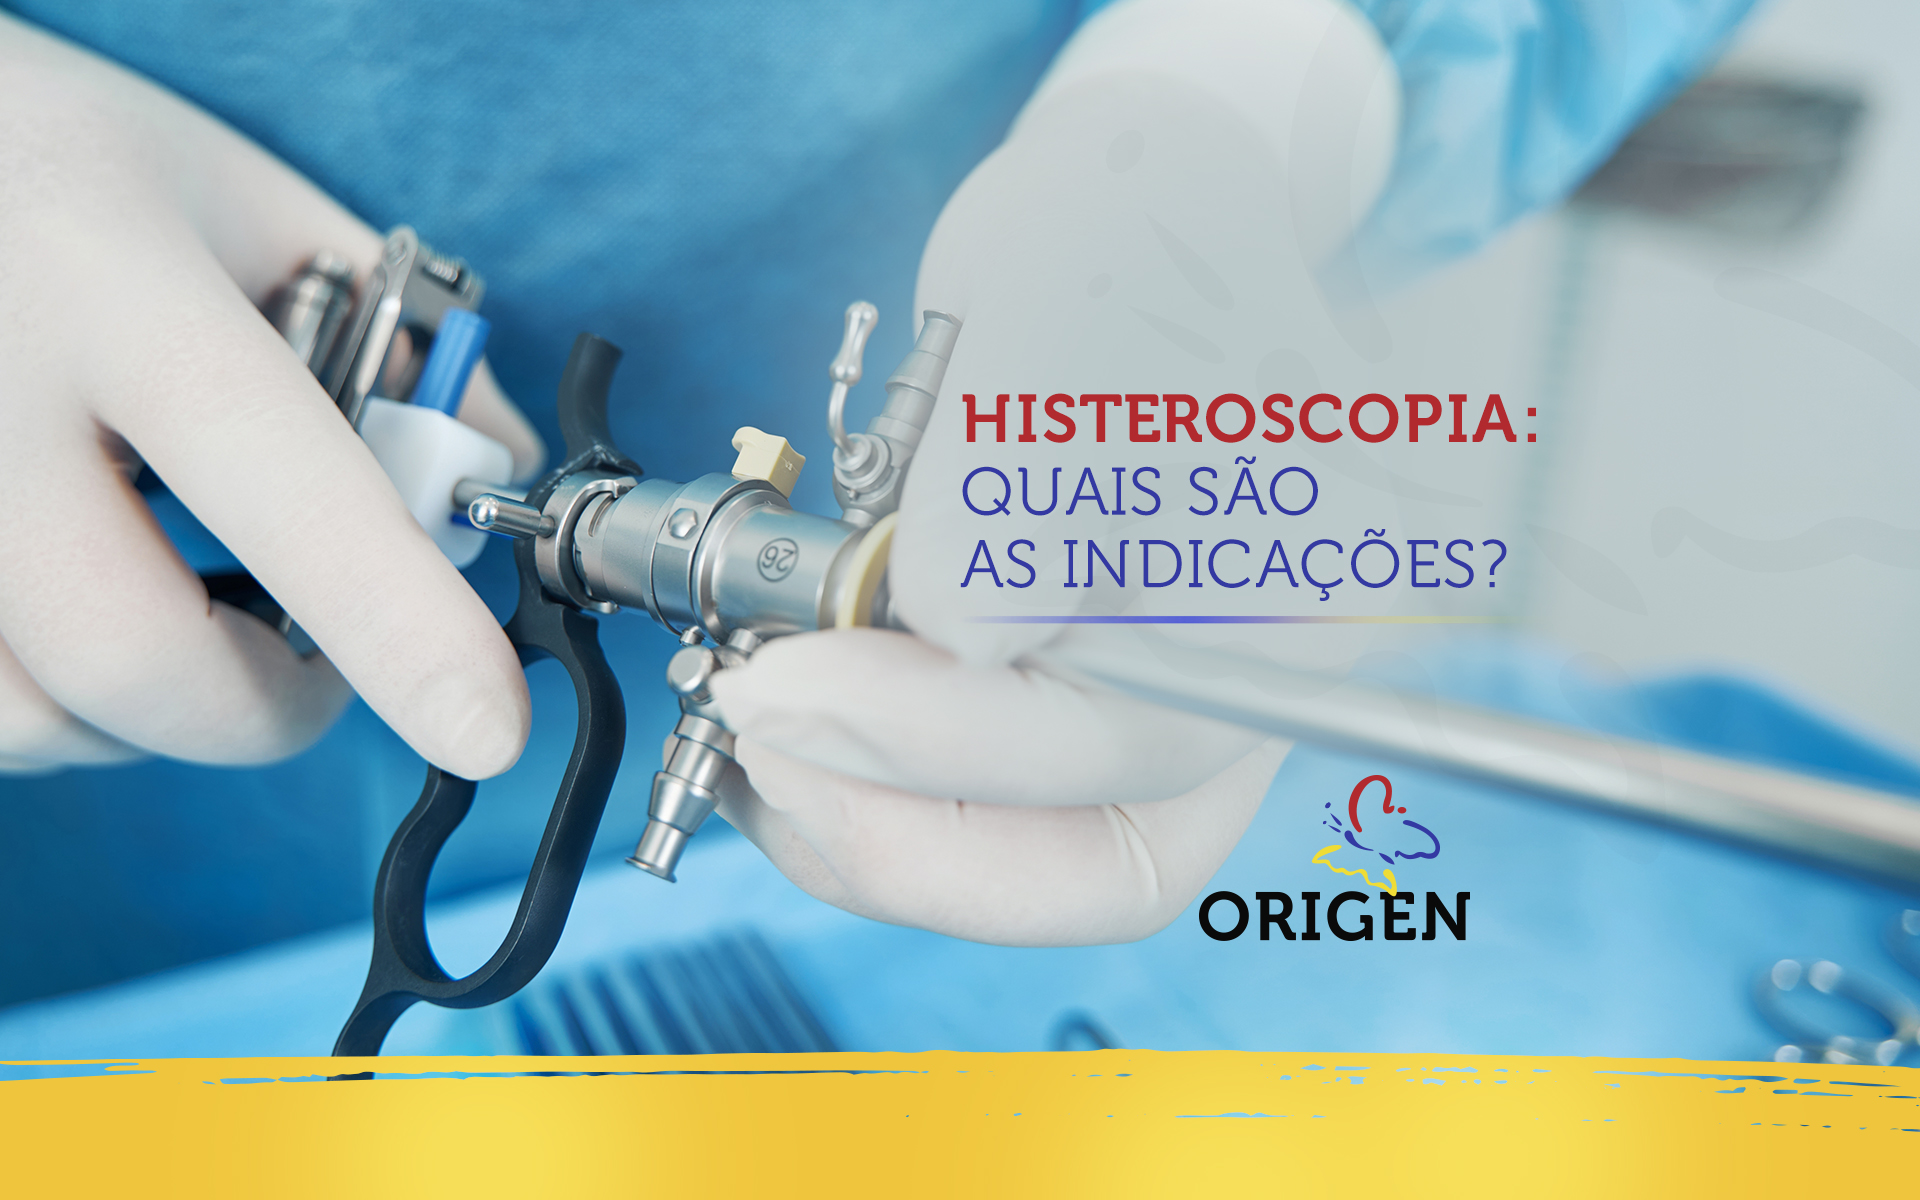 Histeroscopia: quais são as indicações?